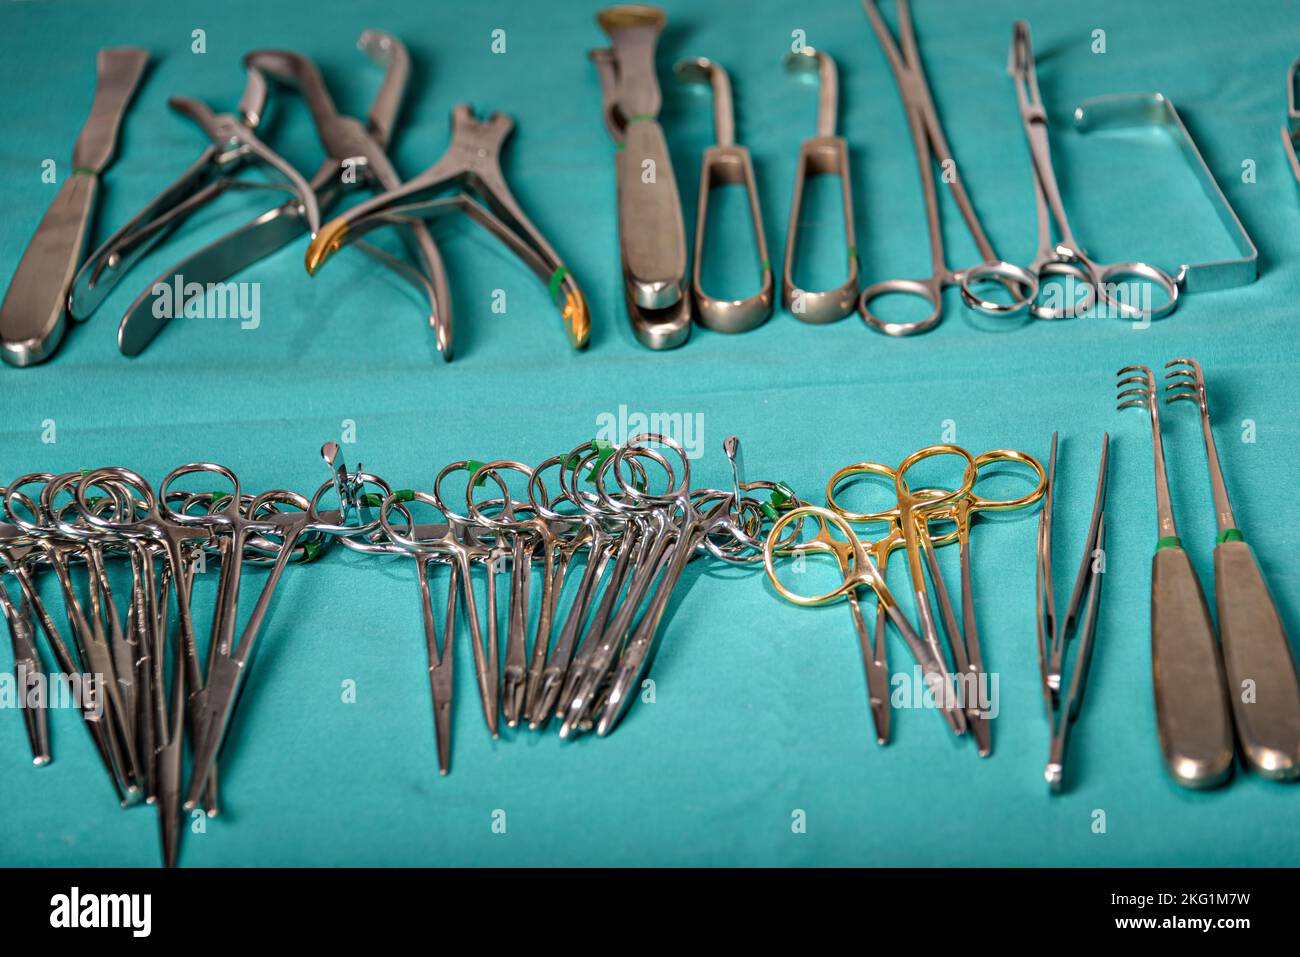 Préparer les instruments chirurgicaux pendant l'opération, ciseaux, pinces et scalpels, ciseaux droits utilisés pour couper le matériel de suture où comme ciseaux courbes Banque D'Images